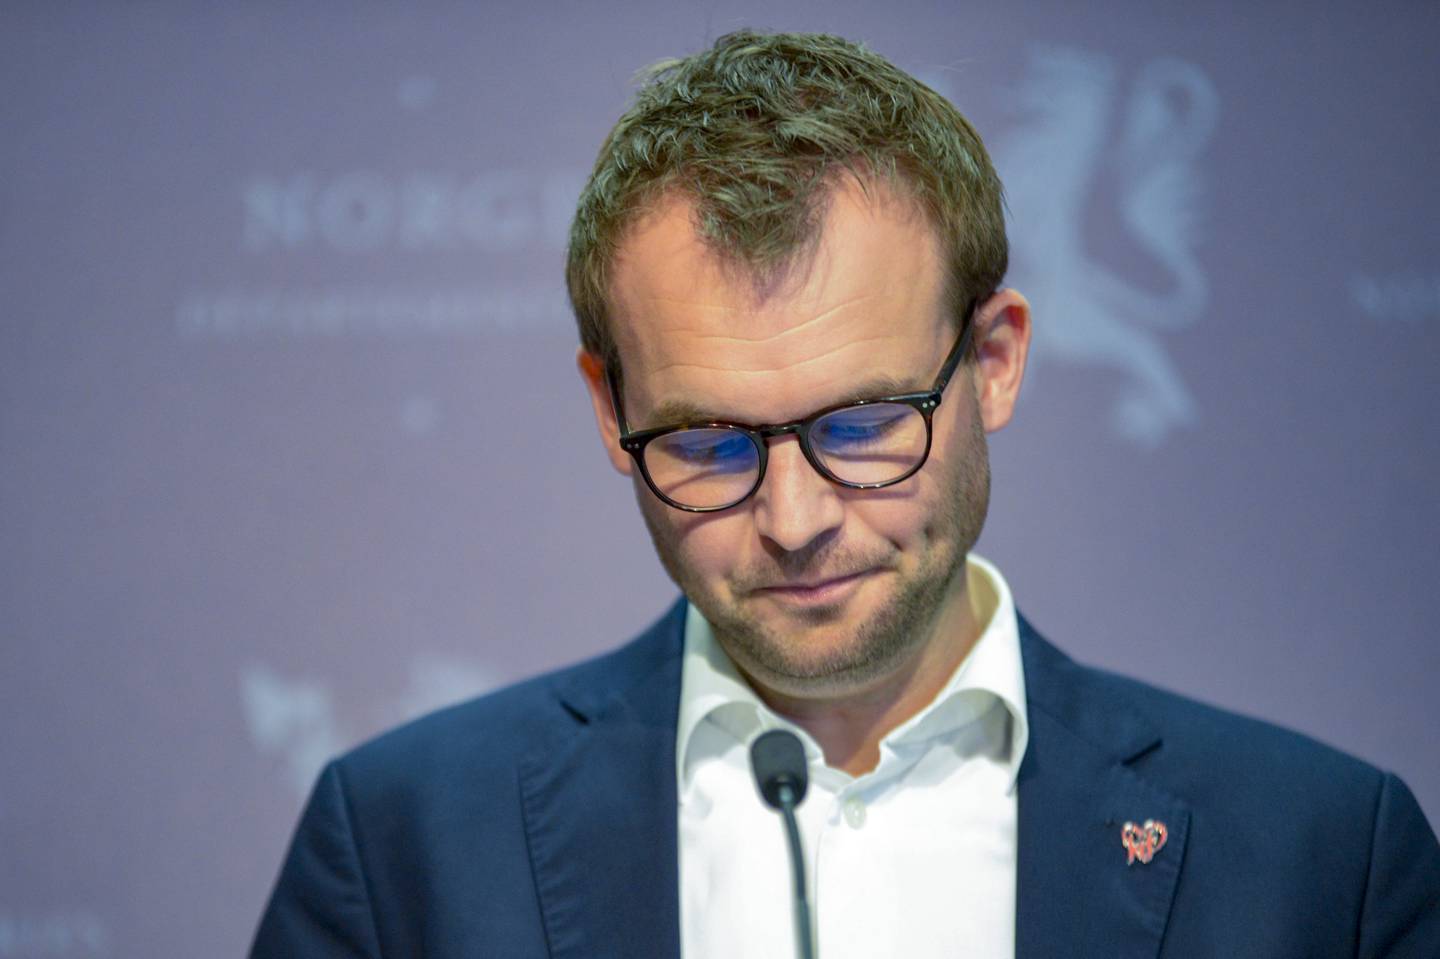 GÅR AV: Kjell Ingolf Ropstad går av som både partileder i KrF og som barne- og familieminister, etter skatteavsløringene fredag.